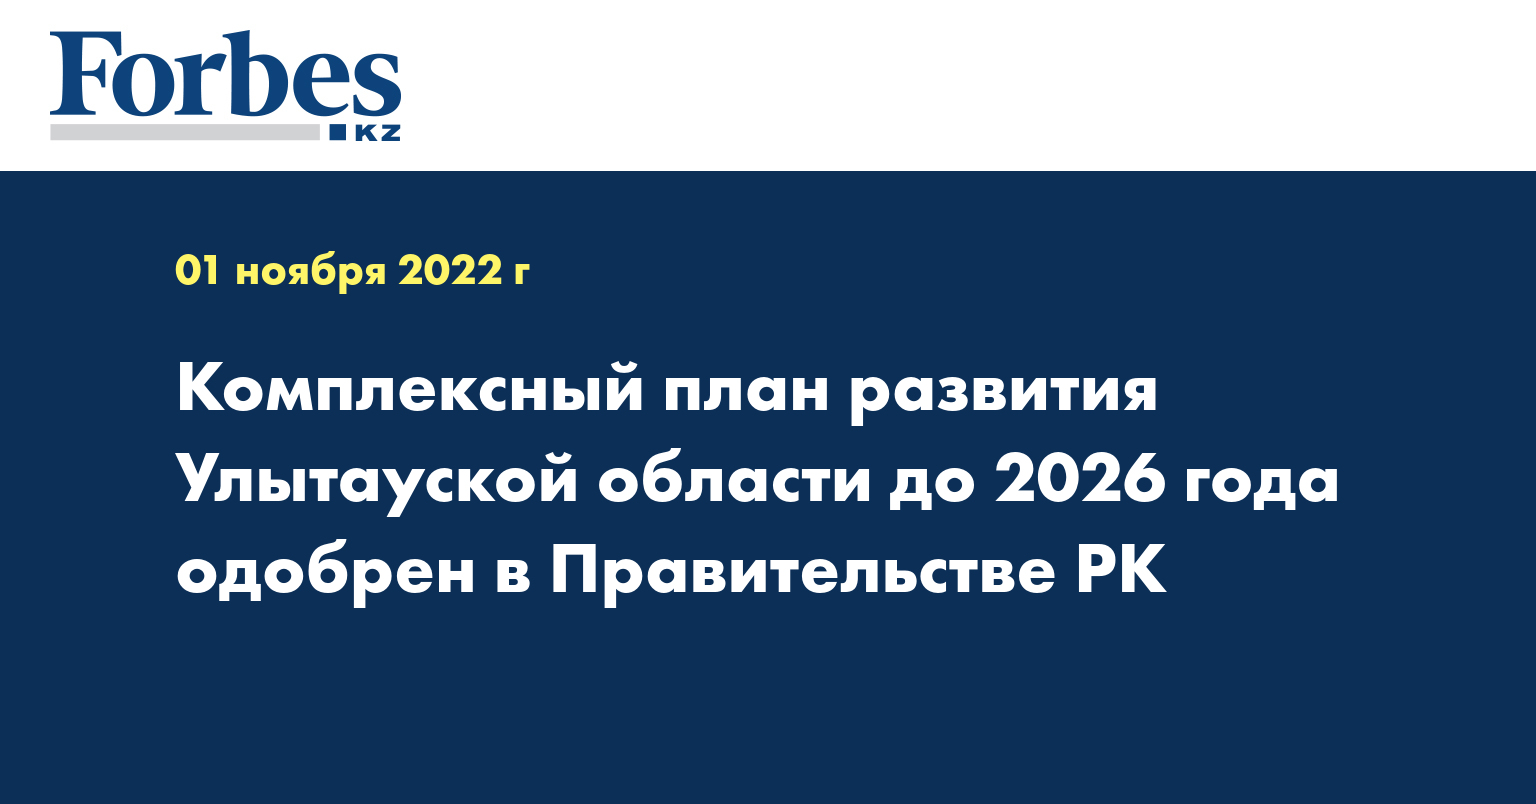 Комплексный план развития Улытауской области до 2026 года одобрен в Правительстве РК